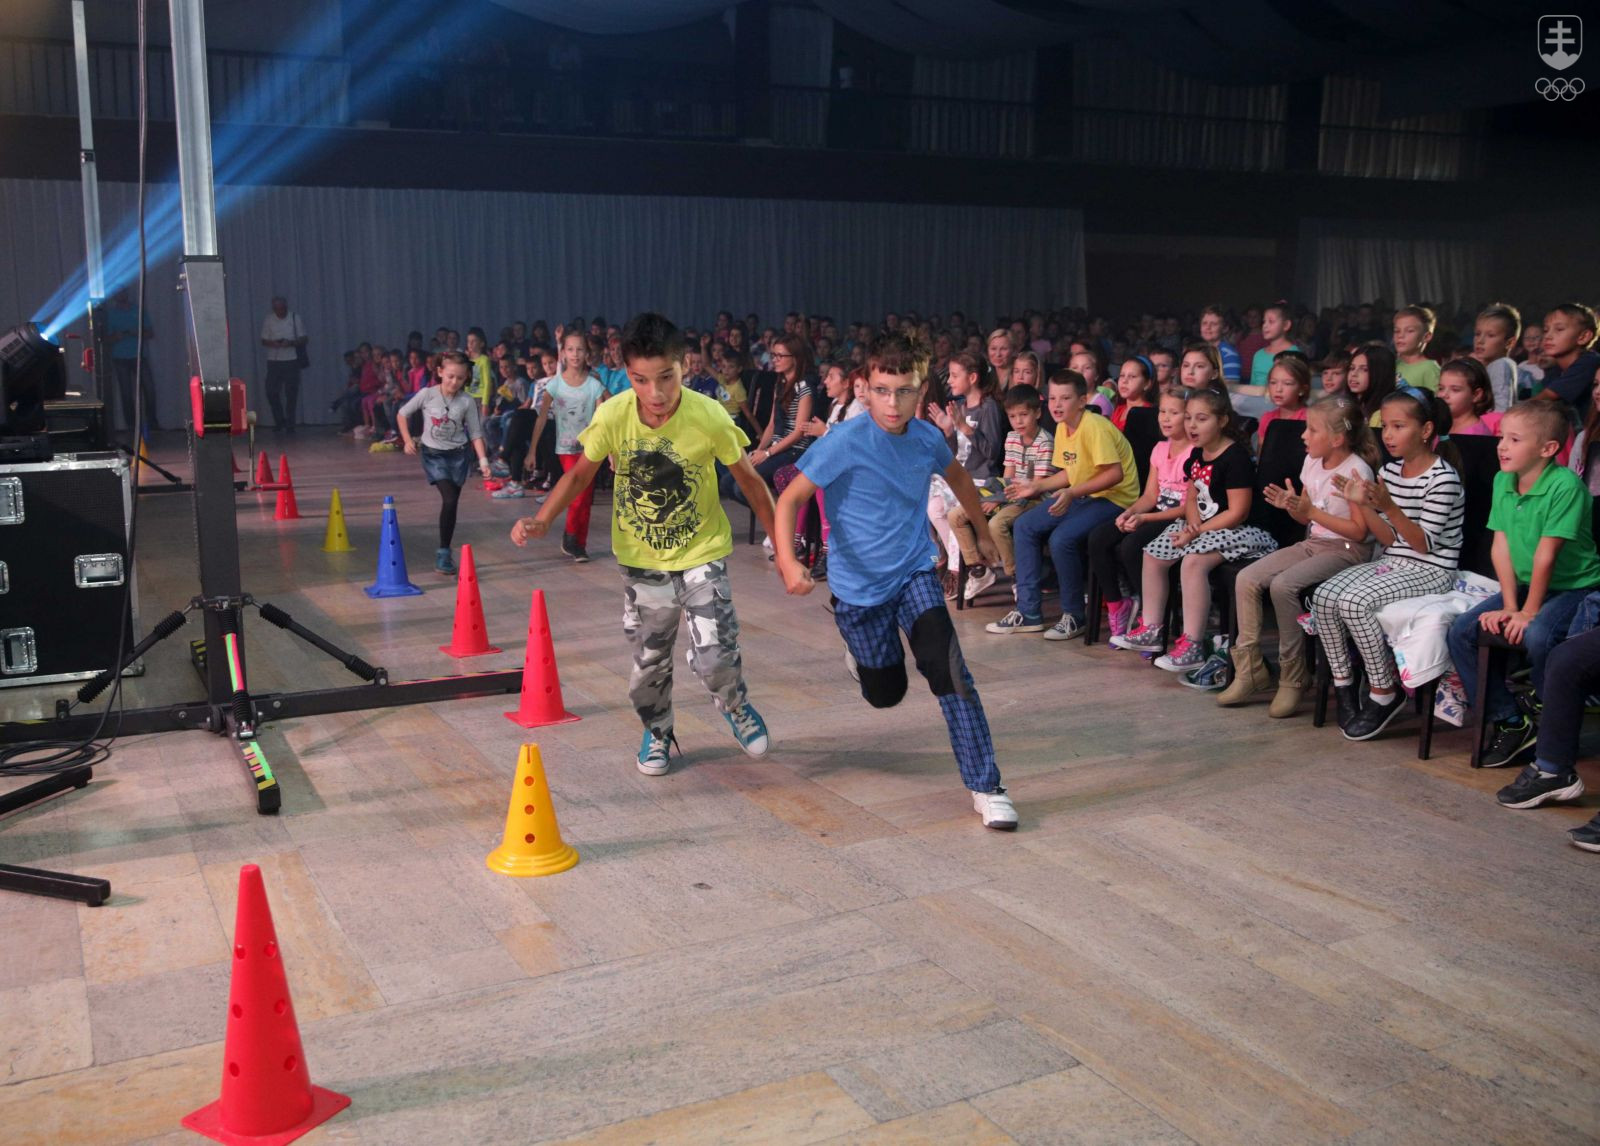 Deti si mohli vyskúšať viaceré športy už v pondelok, no objaviť svoj šport budú môcť v Košiciach najmä v stredu. FOTO: MIROSLAV VACULA